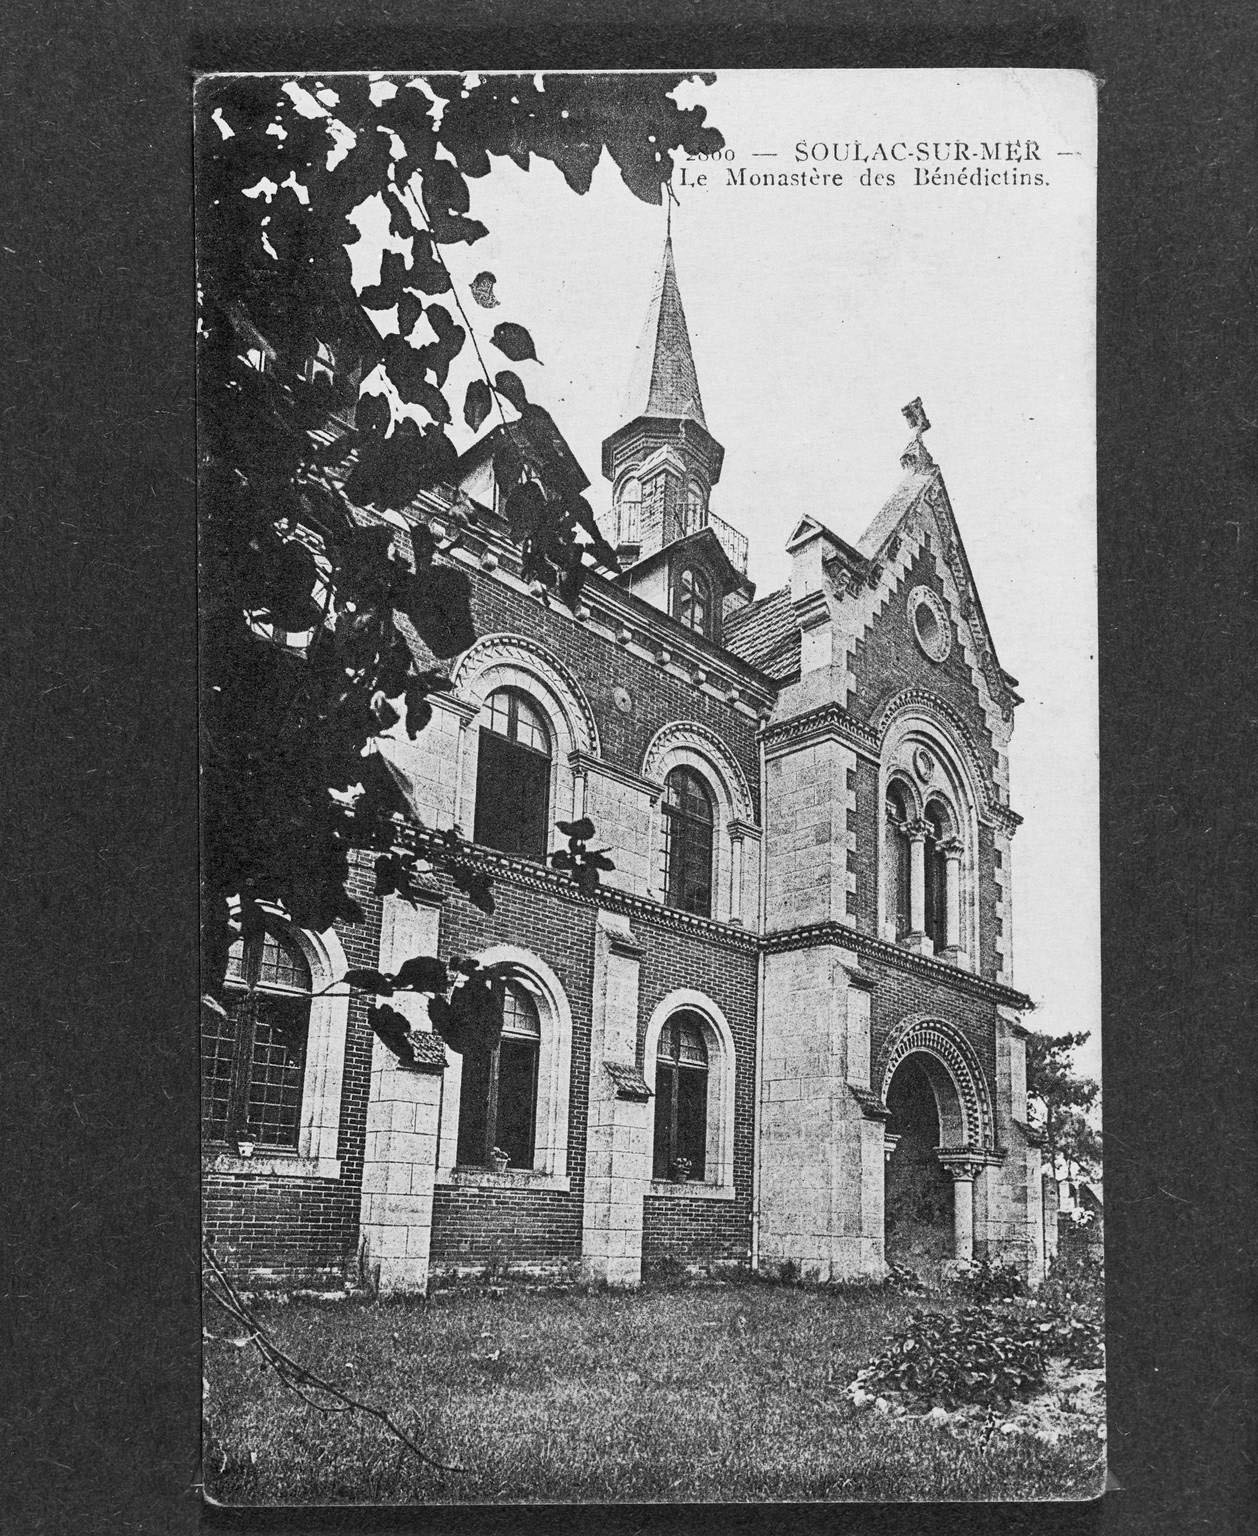 Carte postale, vers 1900 (collection particulière) : le monastère des bénédictins.